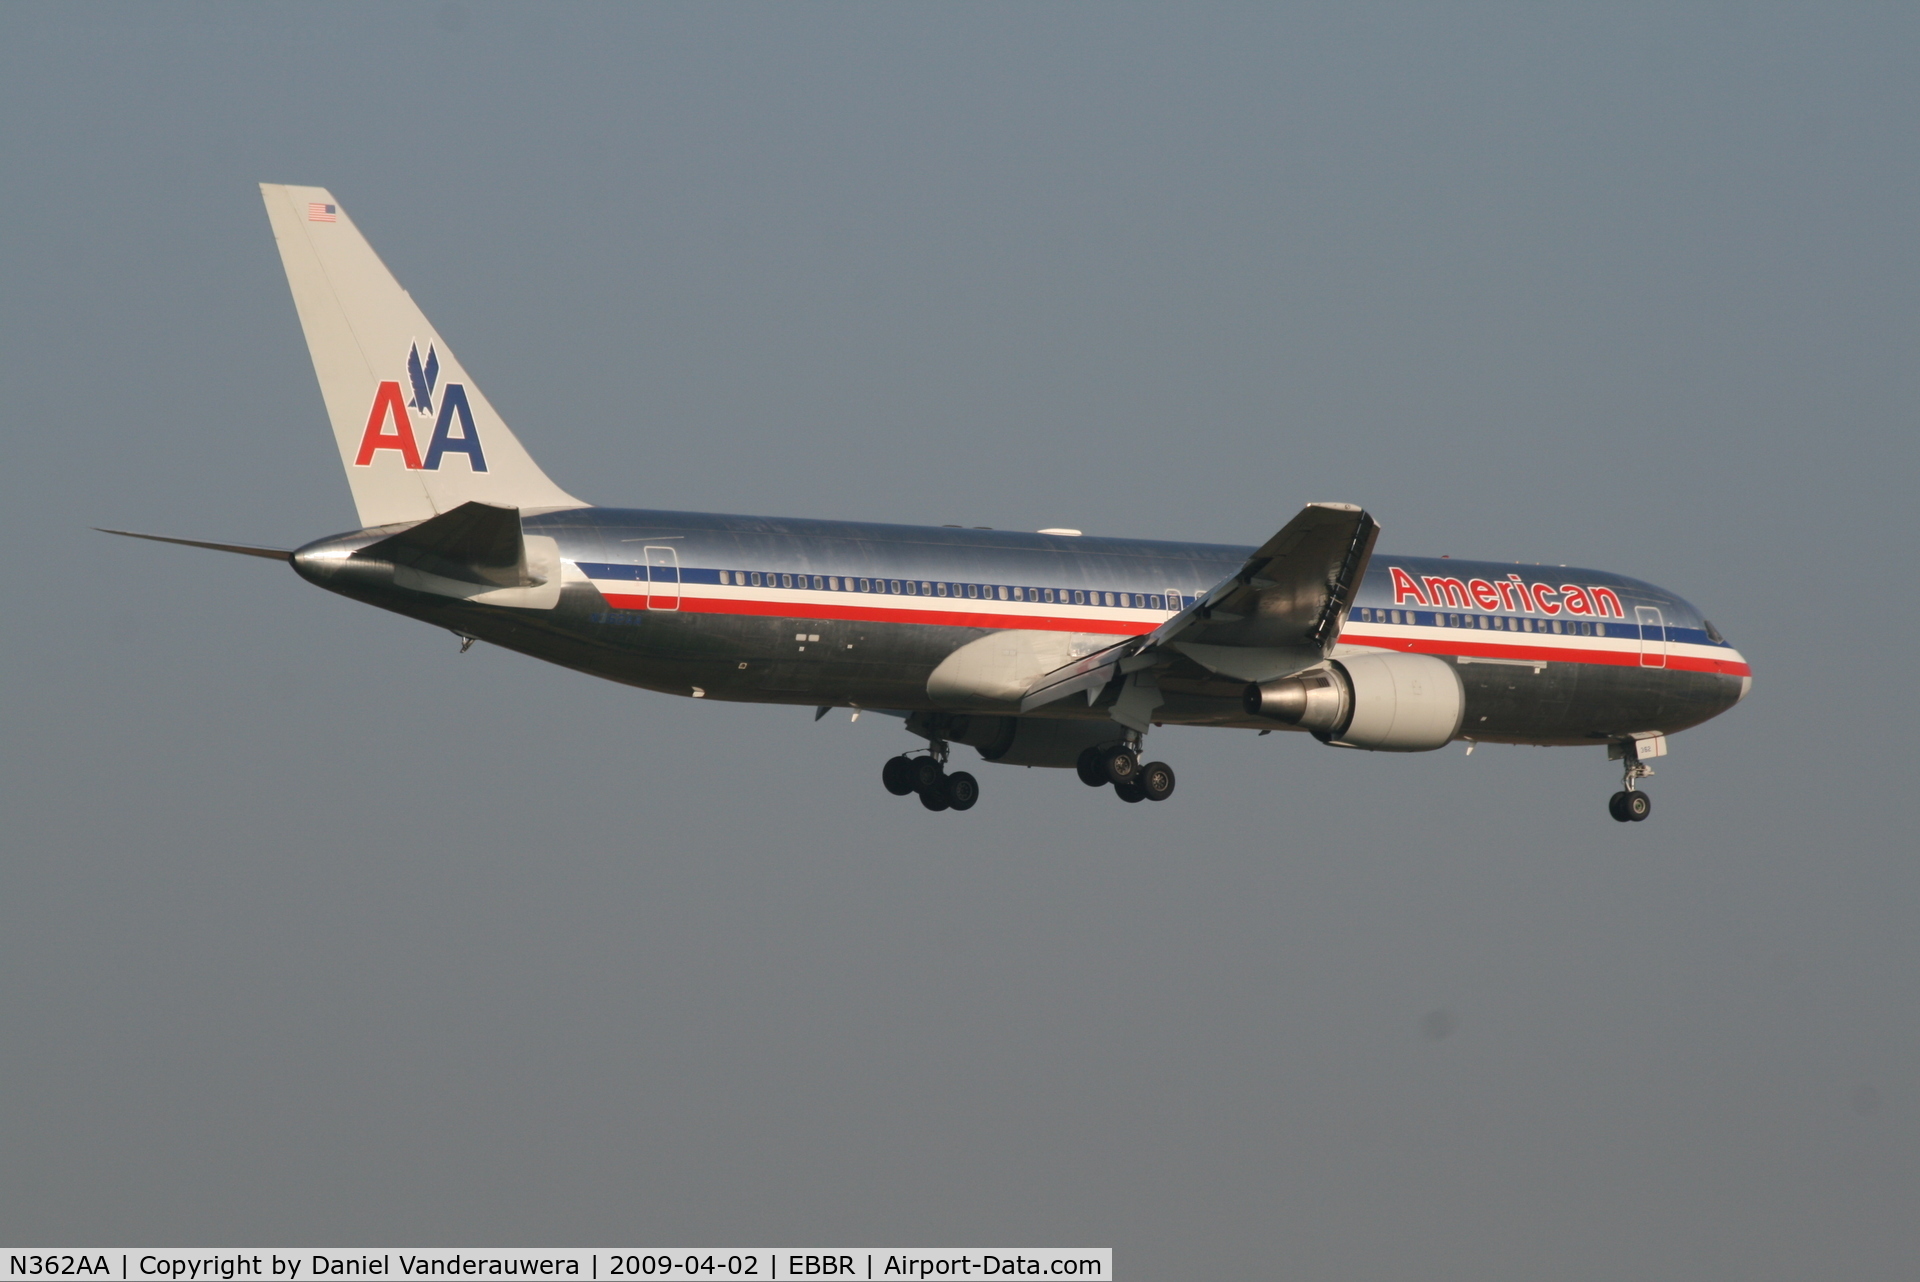 N362AA, 1988 Boeing 767-323 C/N 24043, Flight AA088 is descending to RWY 02